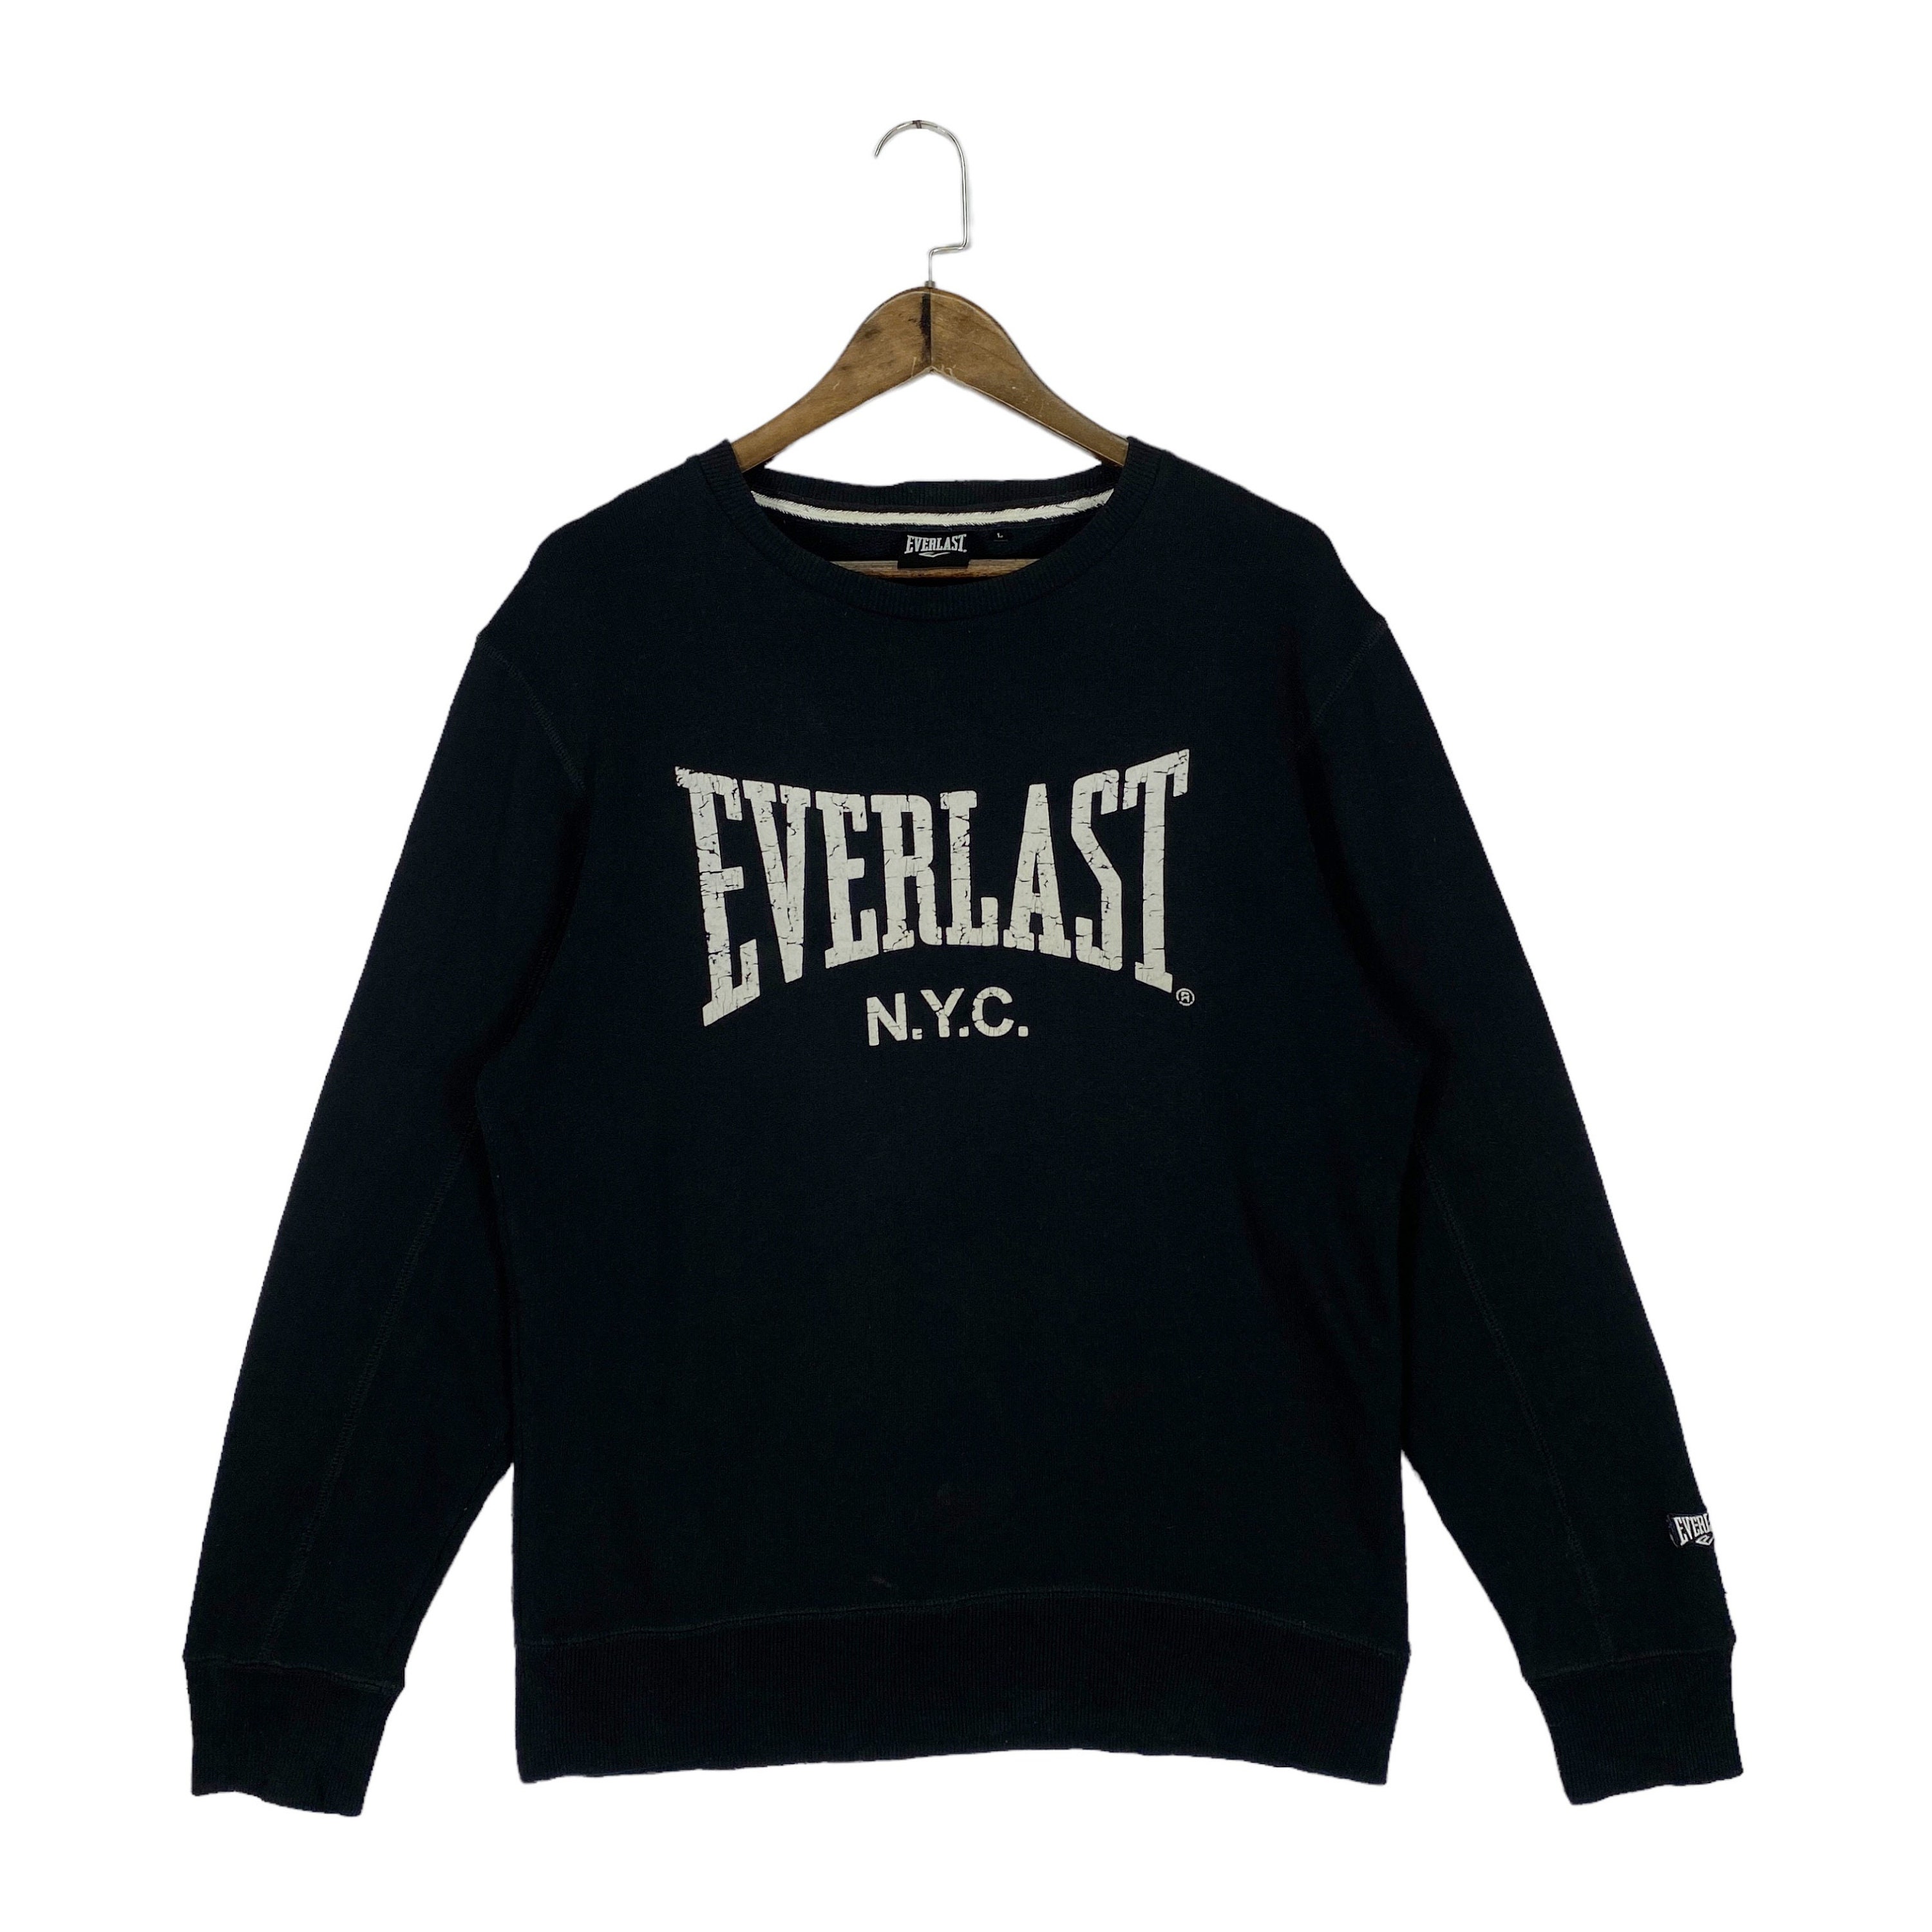 Vintage Everlast NYC Sweatshirt Crewneck Spellout Everlast Japan